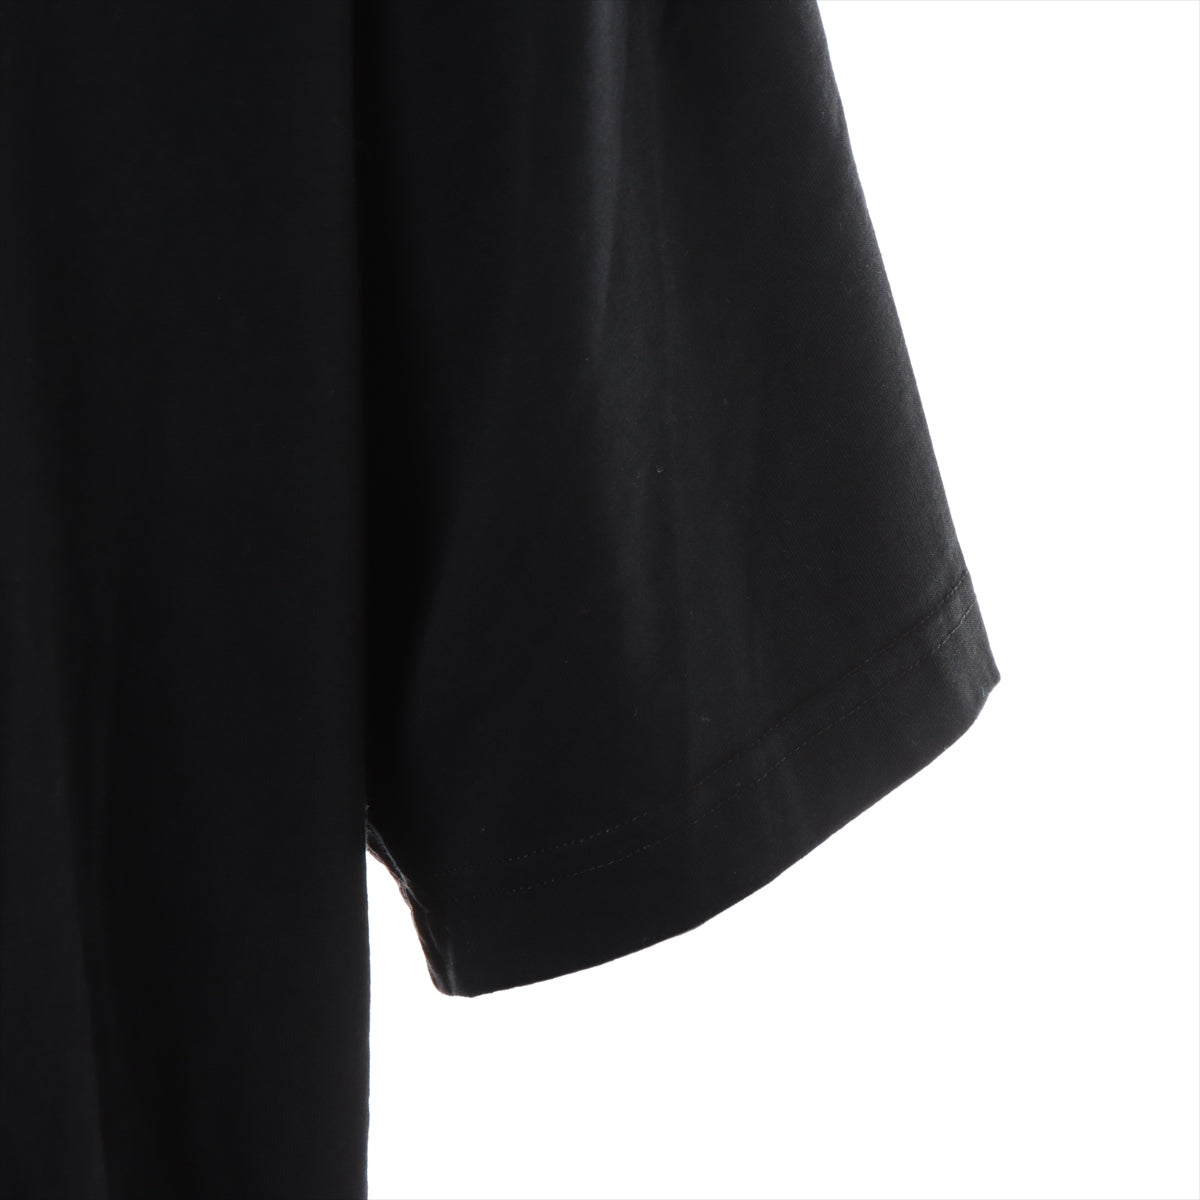 ヴェトモン 21SS コットン Tシャツ XL メンズ ブラック  バックラベル